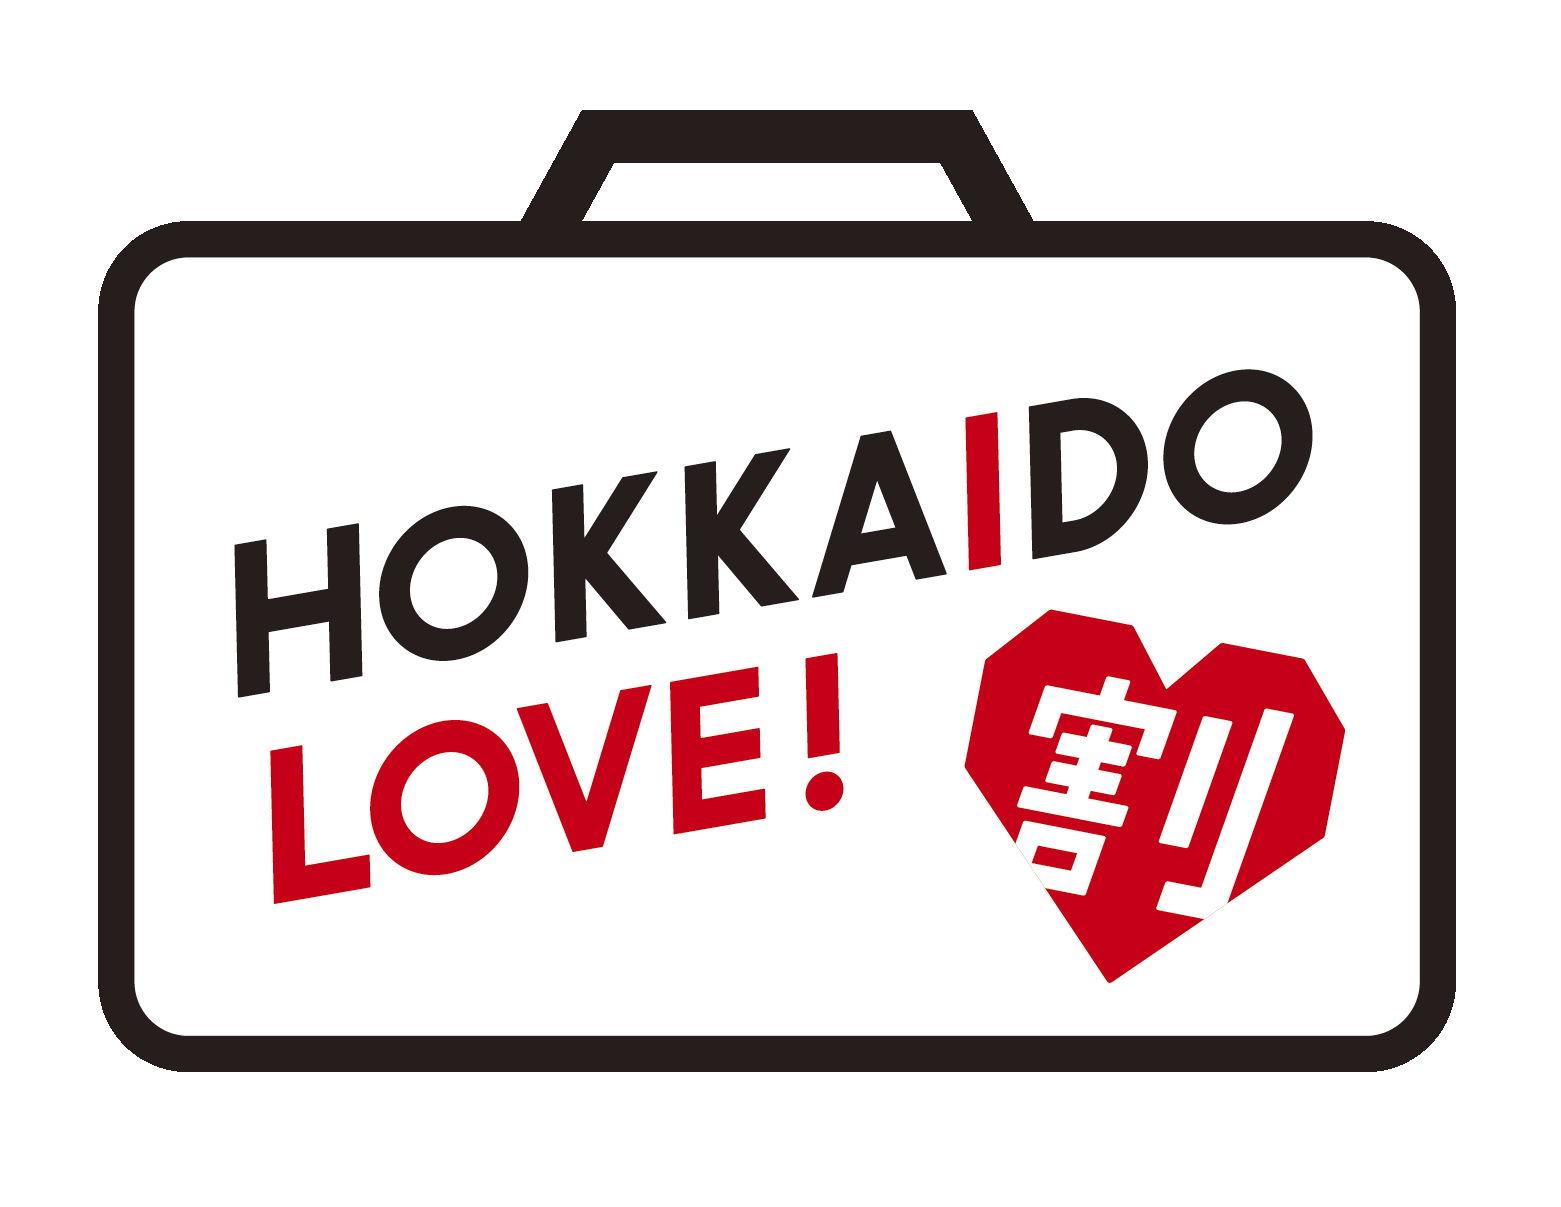 【完売による一時販売停止のお知らせ】全国旅行支援【HOKKAIDO LOVE!割】